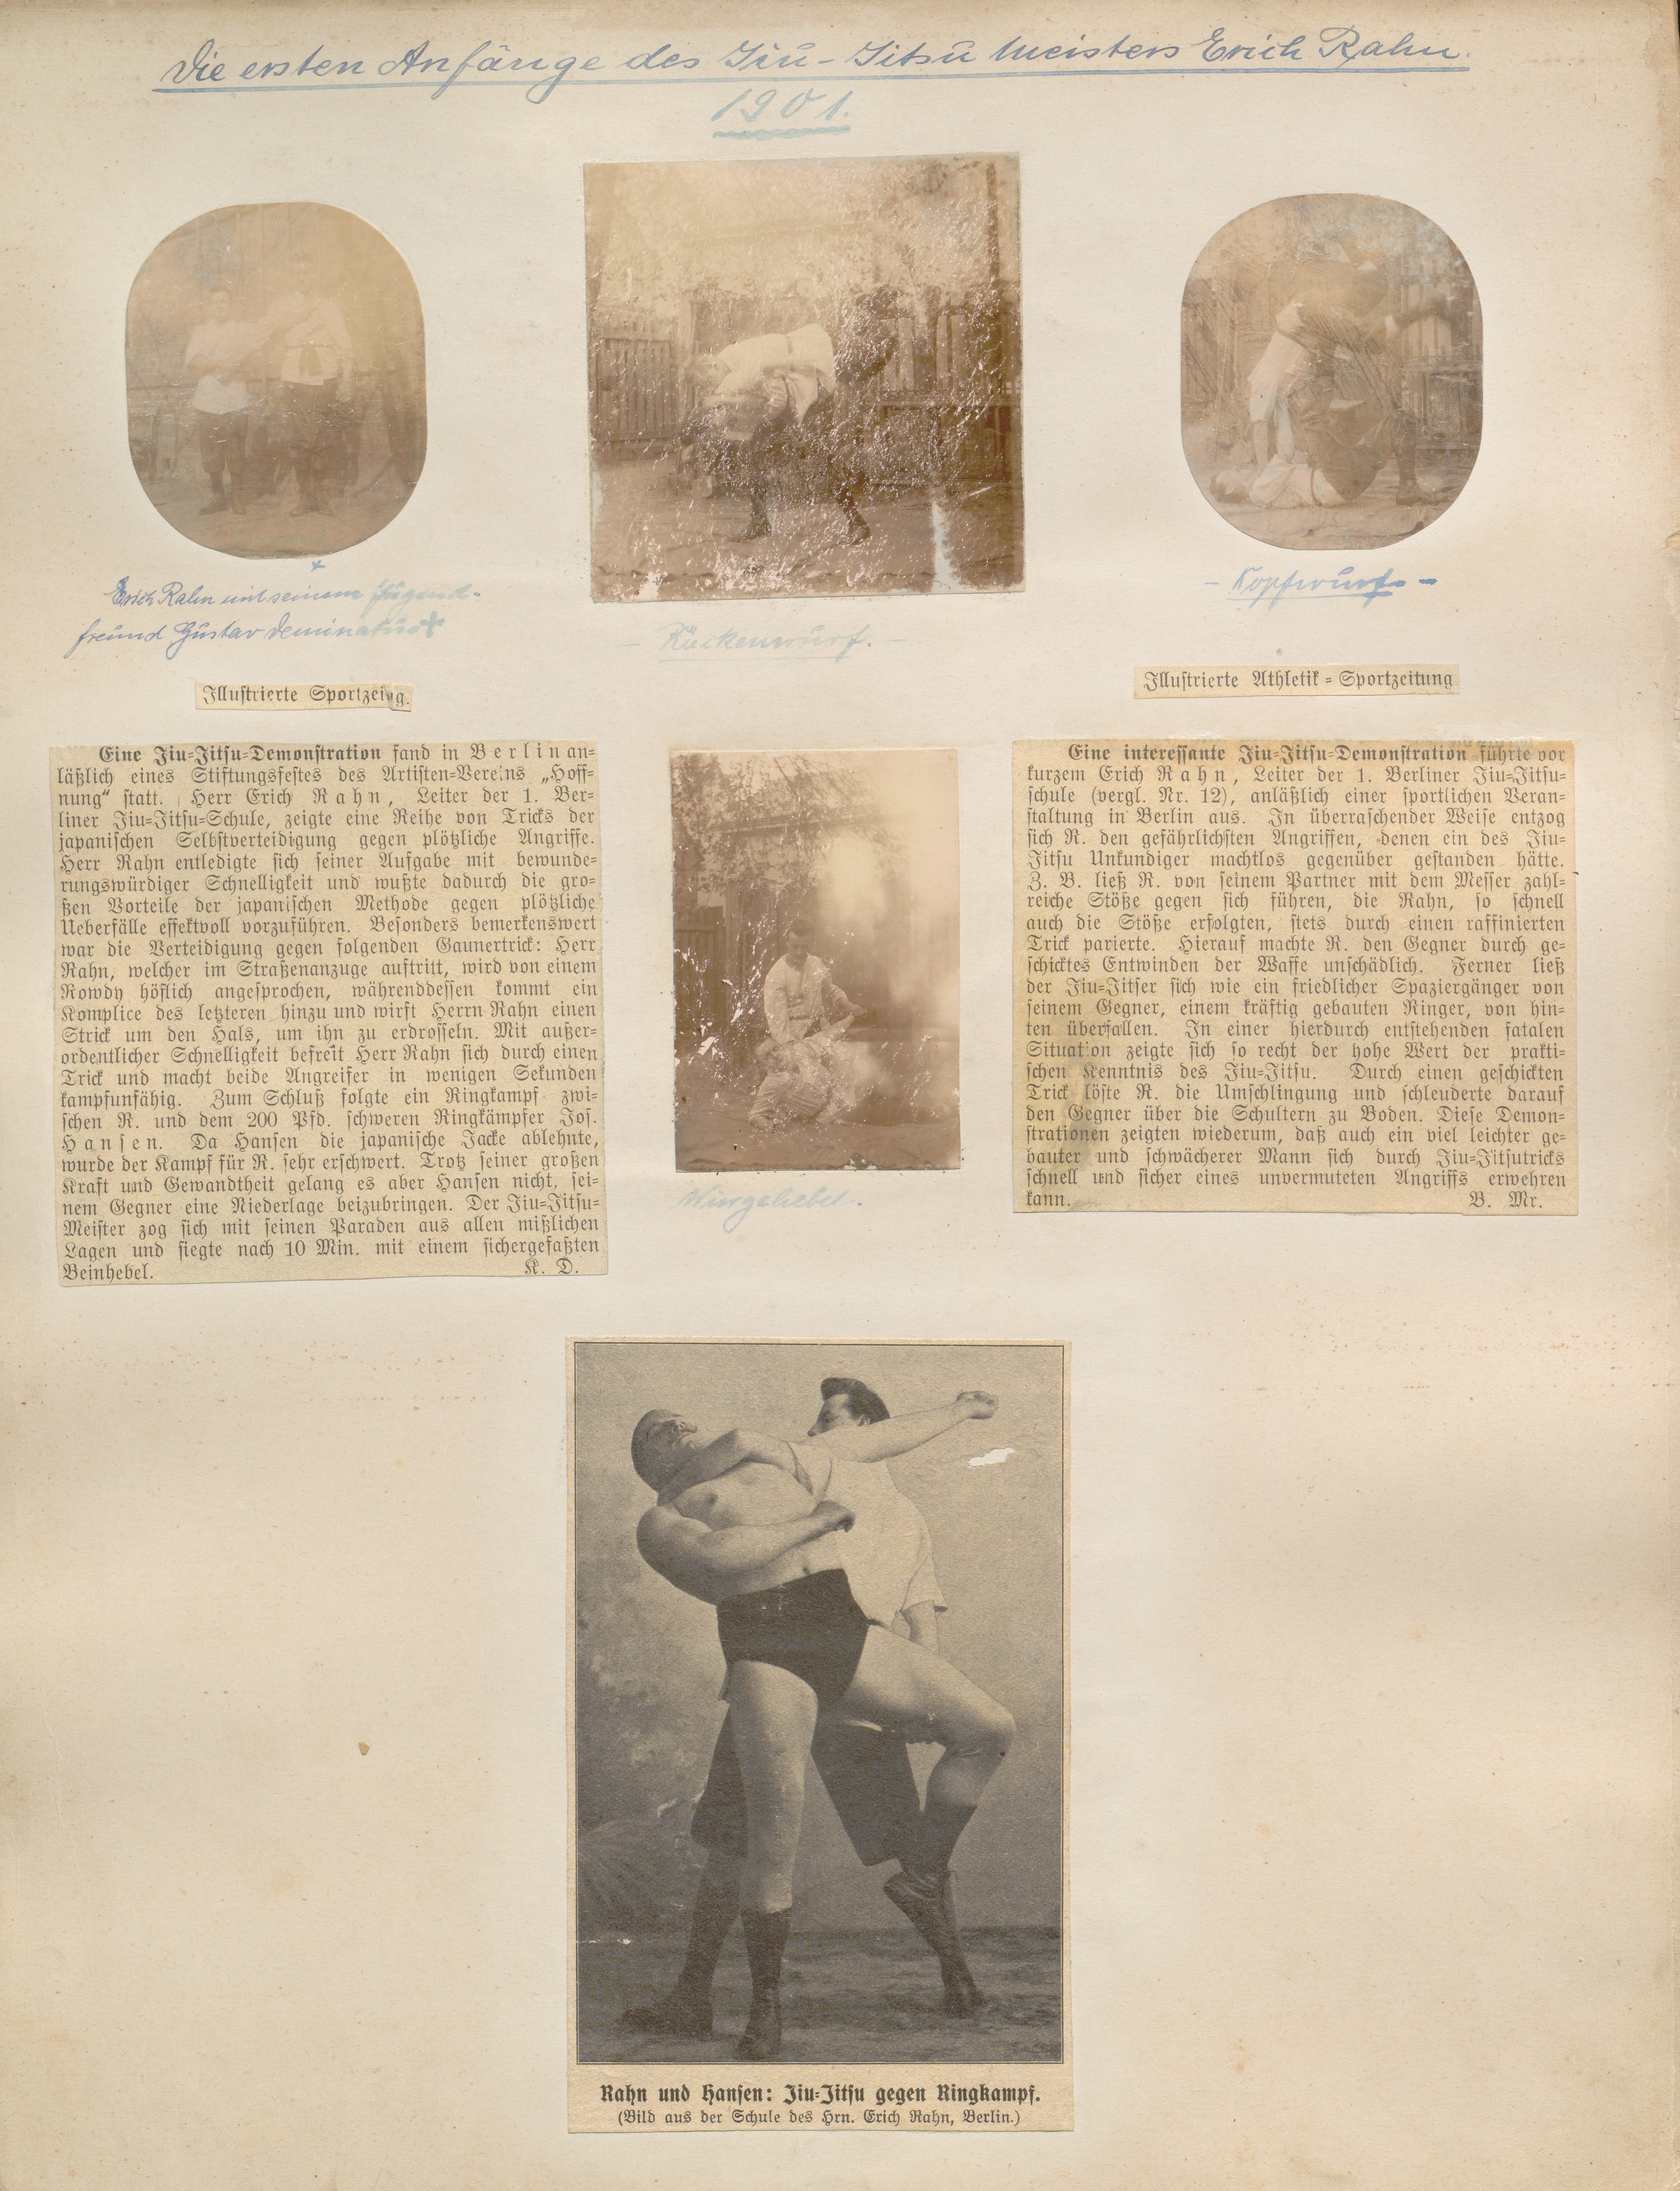 Album Erich Rahn; Die ersten Anfänge des Jiu-Jitsu Meisters Erich Rahn 1901 (Sportmuseum Berlin CC0)